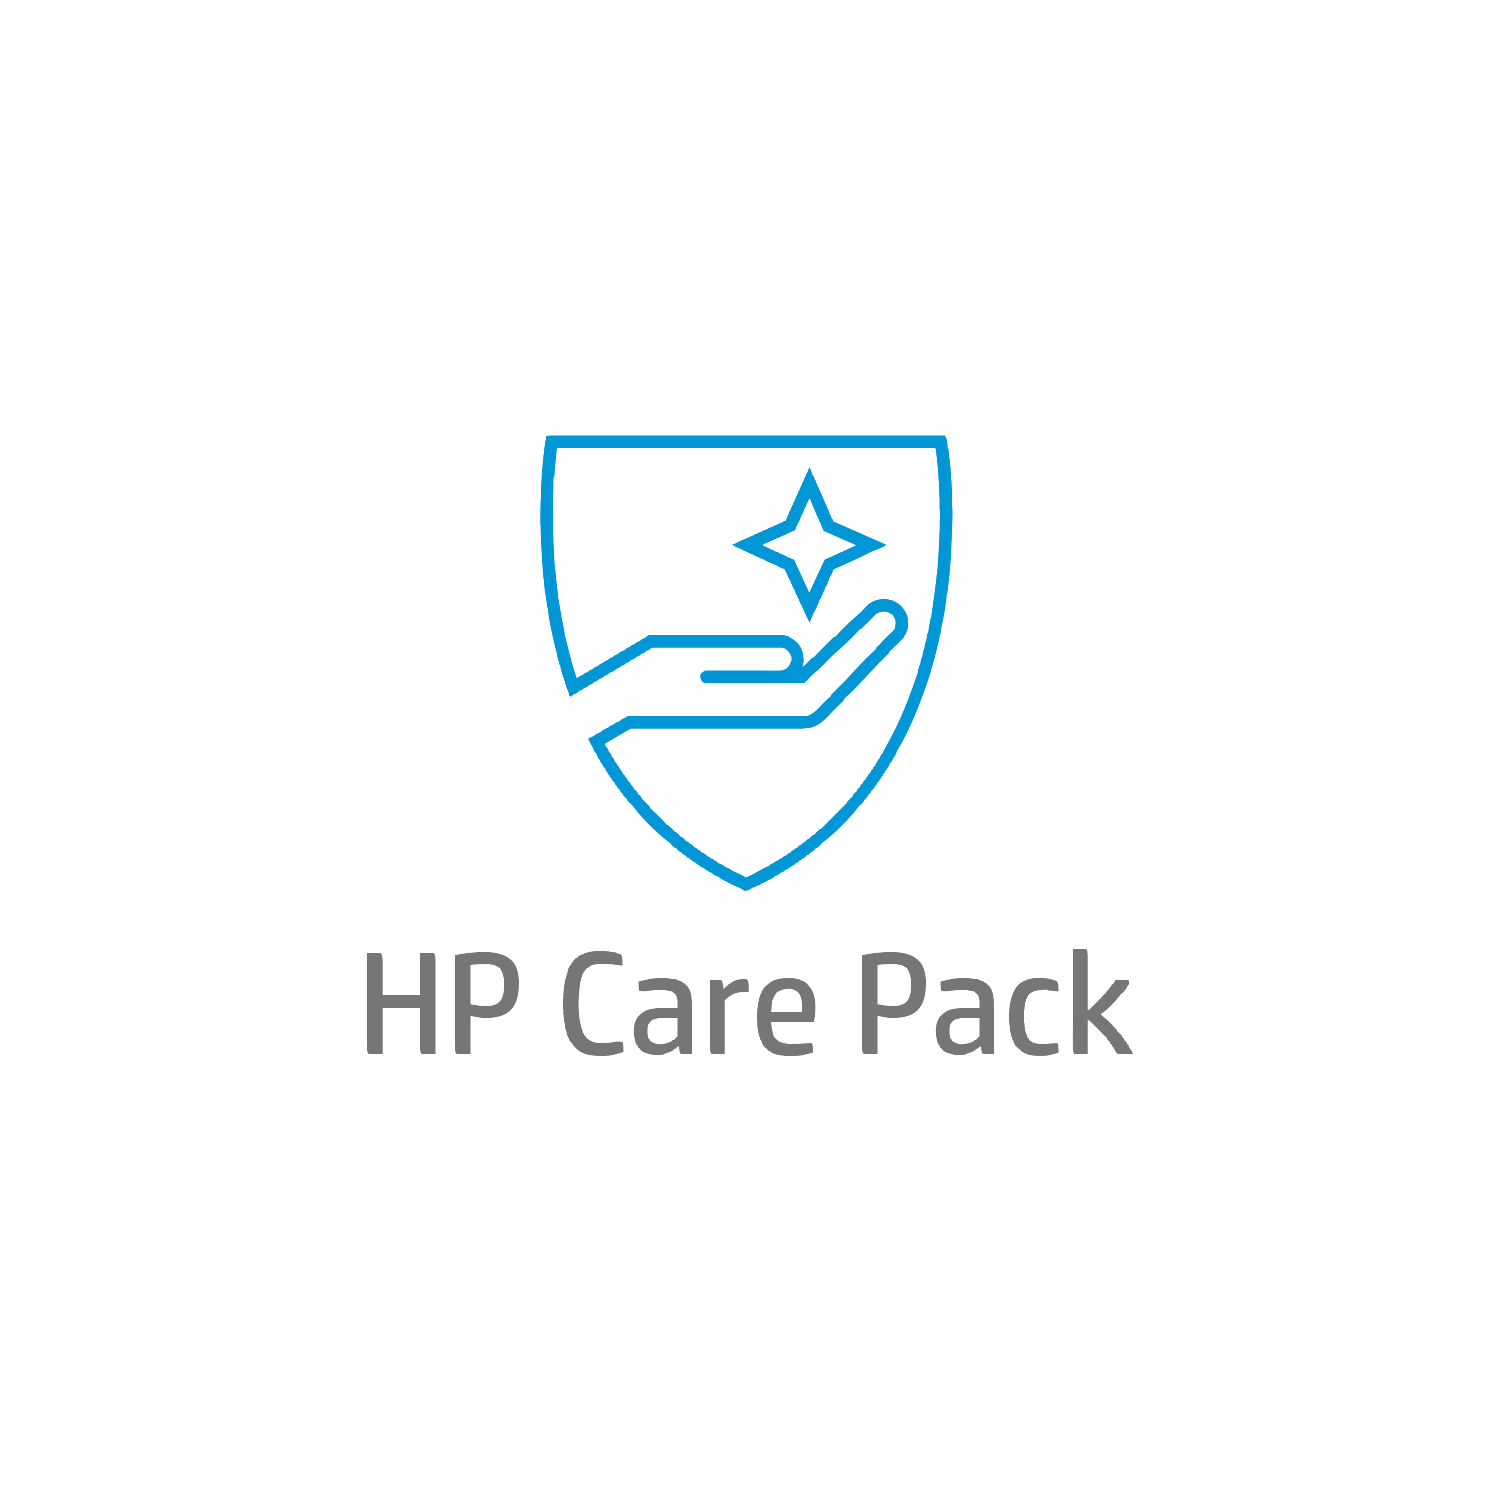 Bild von HP Active Care Lösungs-Support vor Ort am nächsten Arbeitstag für Desktops - 3 Jahre - Reparatur vor Ort - Vor Ort - Unter Garantie - Standardarbeitstage - 9 Stunden - 3 Jahre - Reaktion am nächsten Arbeitstag